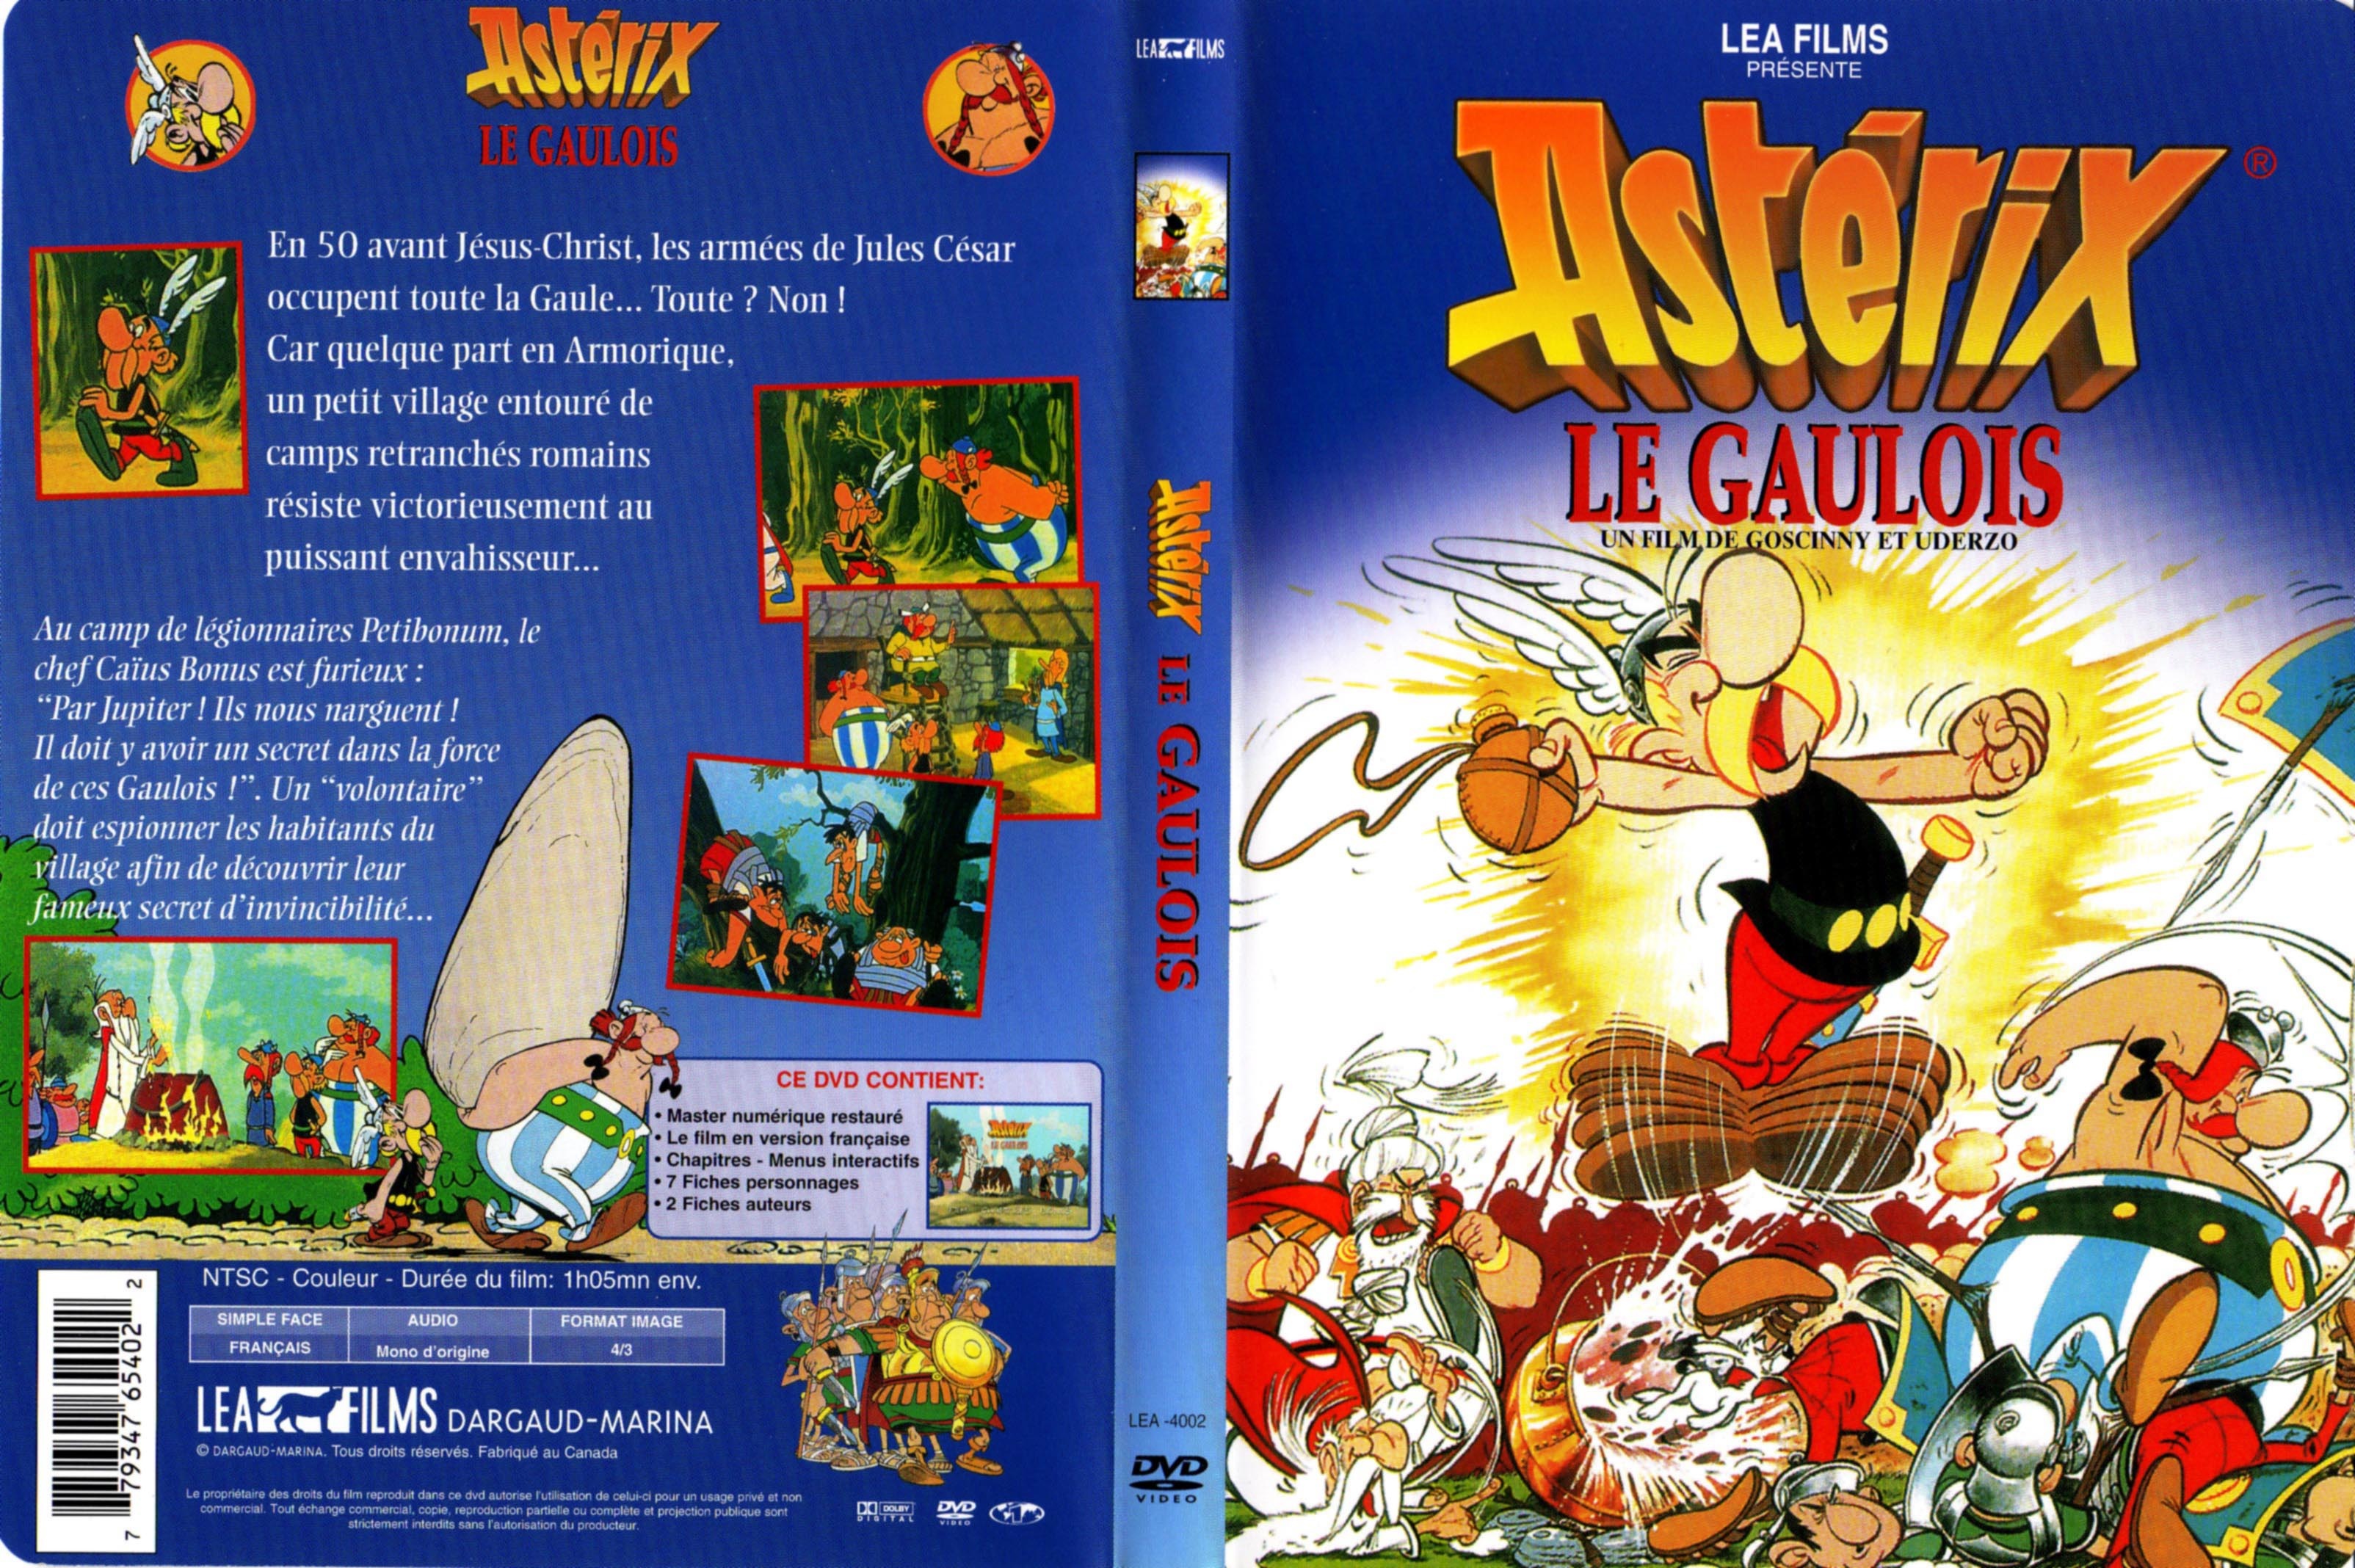 Jaquette DVD Asterix le Gaulois v2